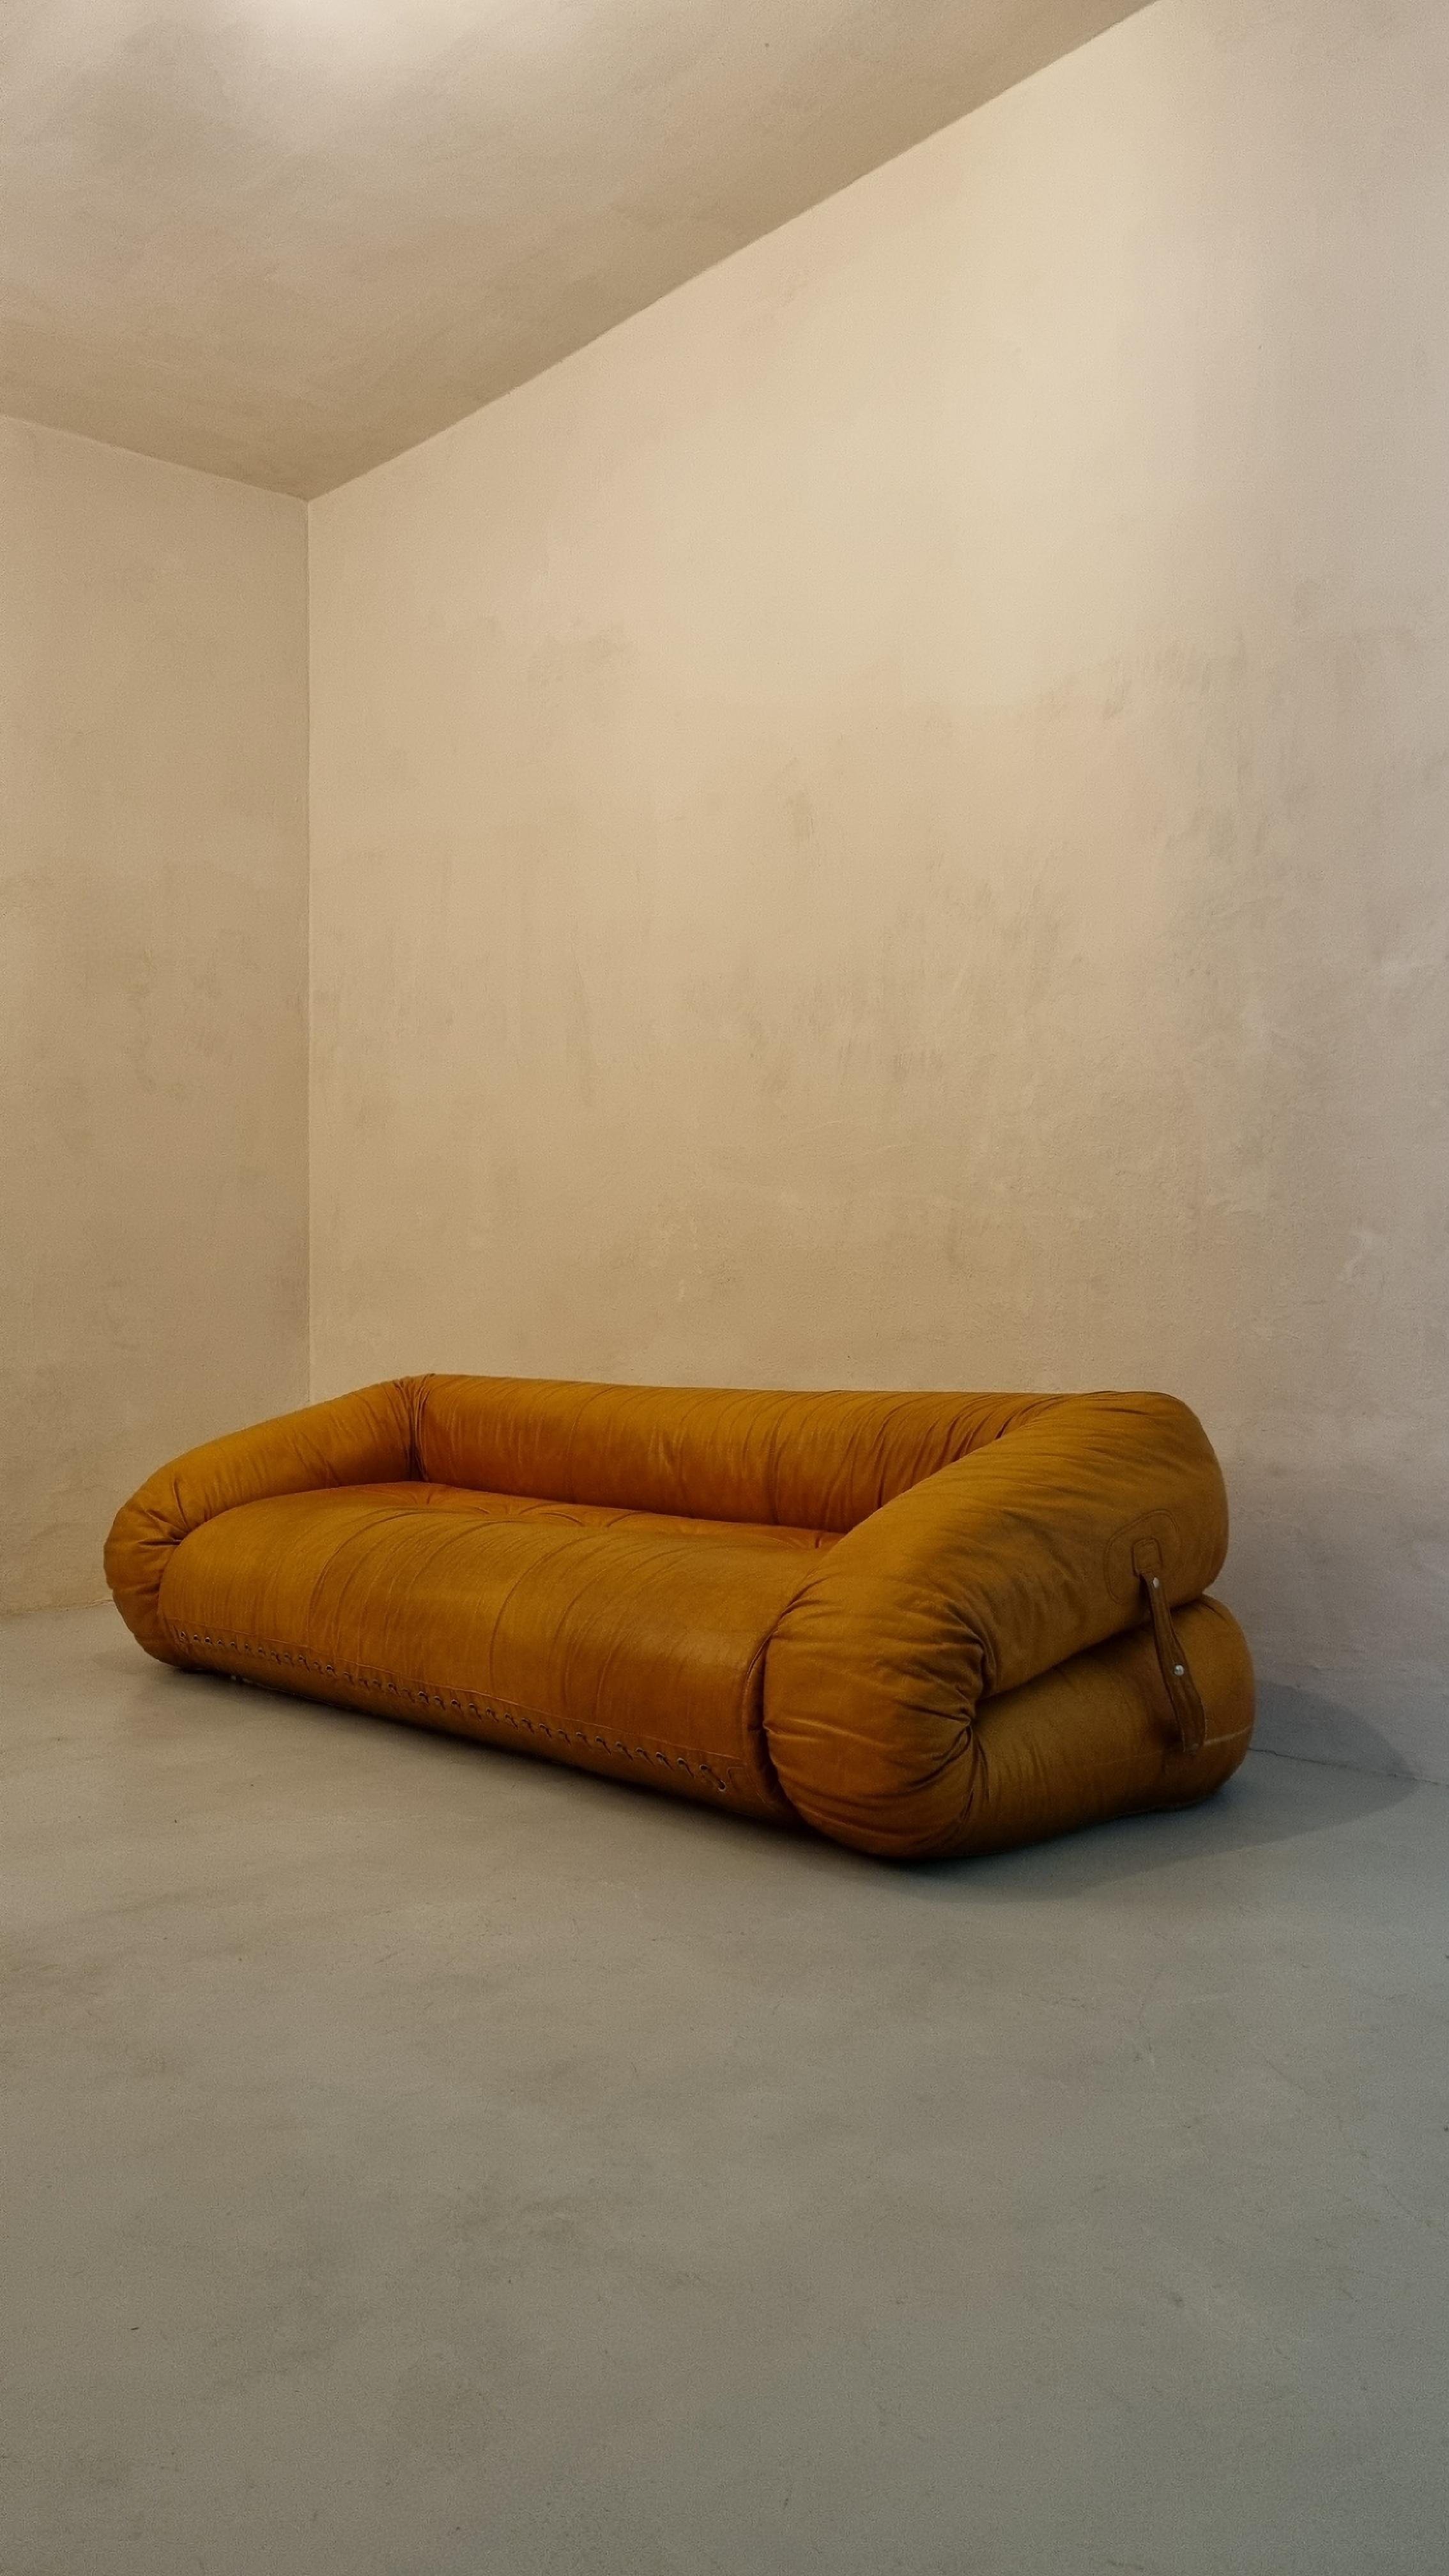 Canapé/lit 3 places iconique conçu par Alessandro Becchi pour Giovannetti, 1970.
Le canapé est en cuir d'origine, très bon état, petits signes de vieillissement, petit trou ( environ 2 mm) dans l'assise.
Le canapé peut être ouvert et transformé en